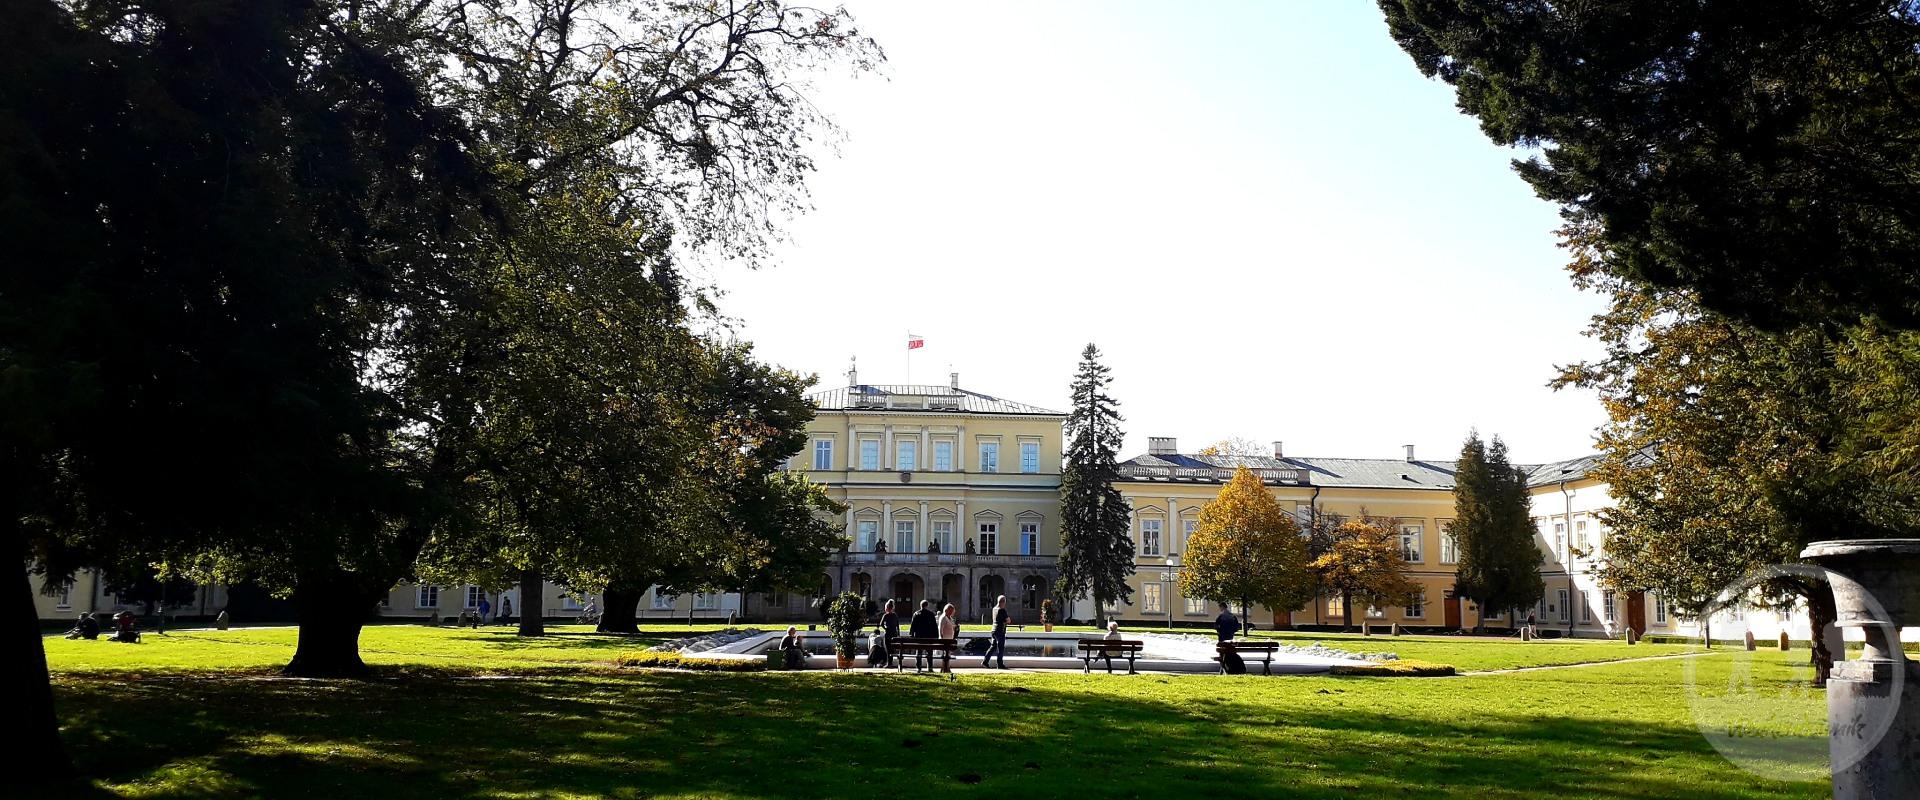 Muzeum Pałac Czartoryskich w Puławach